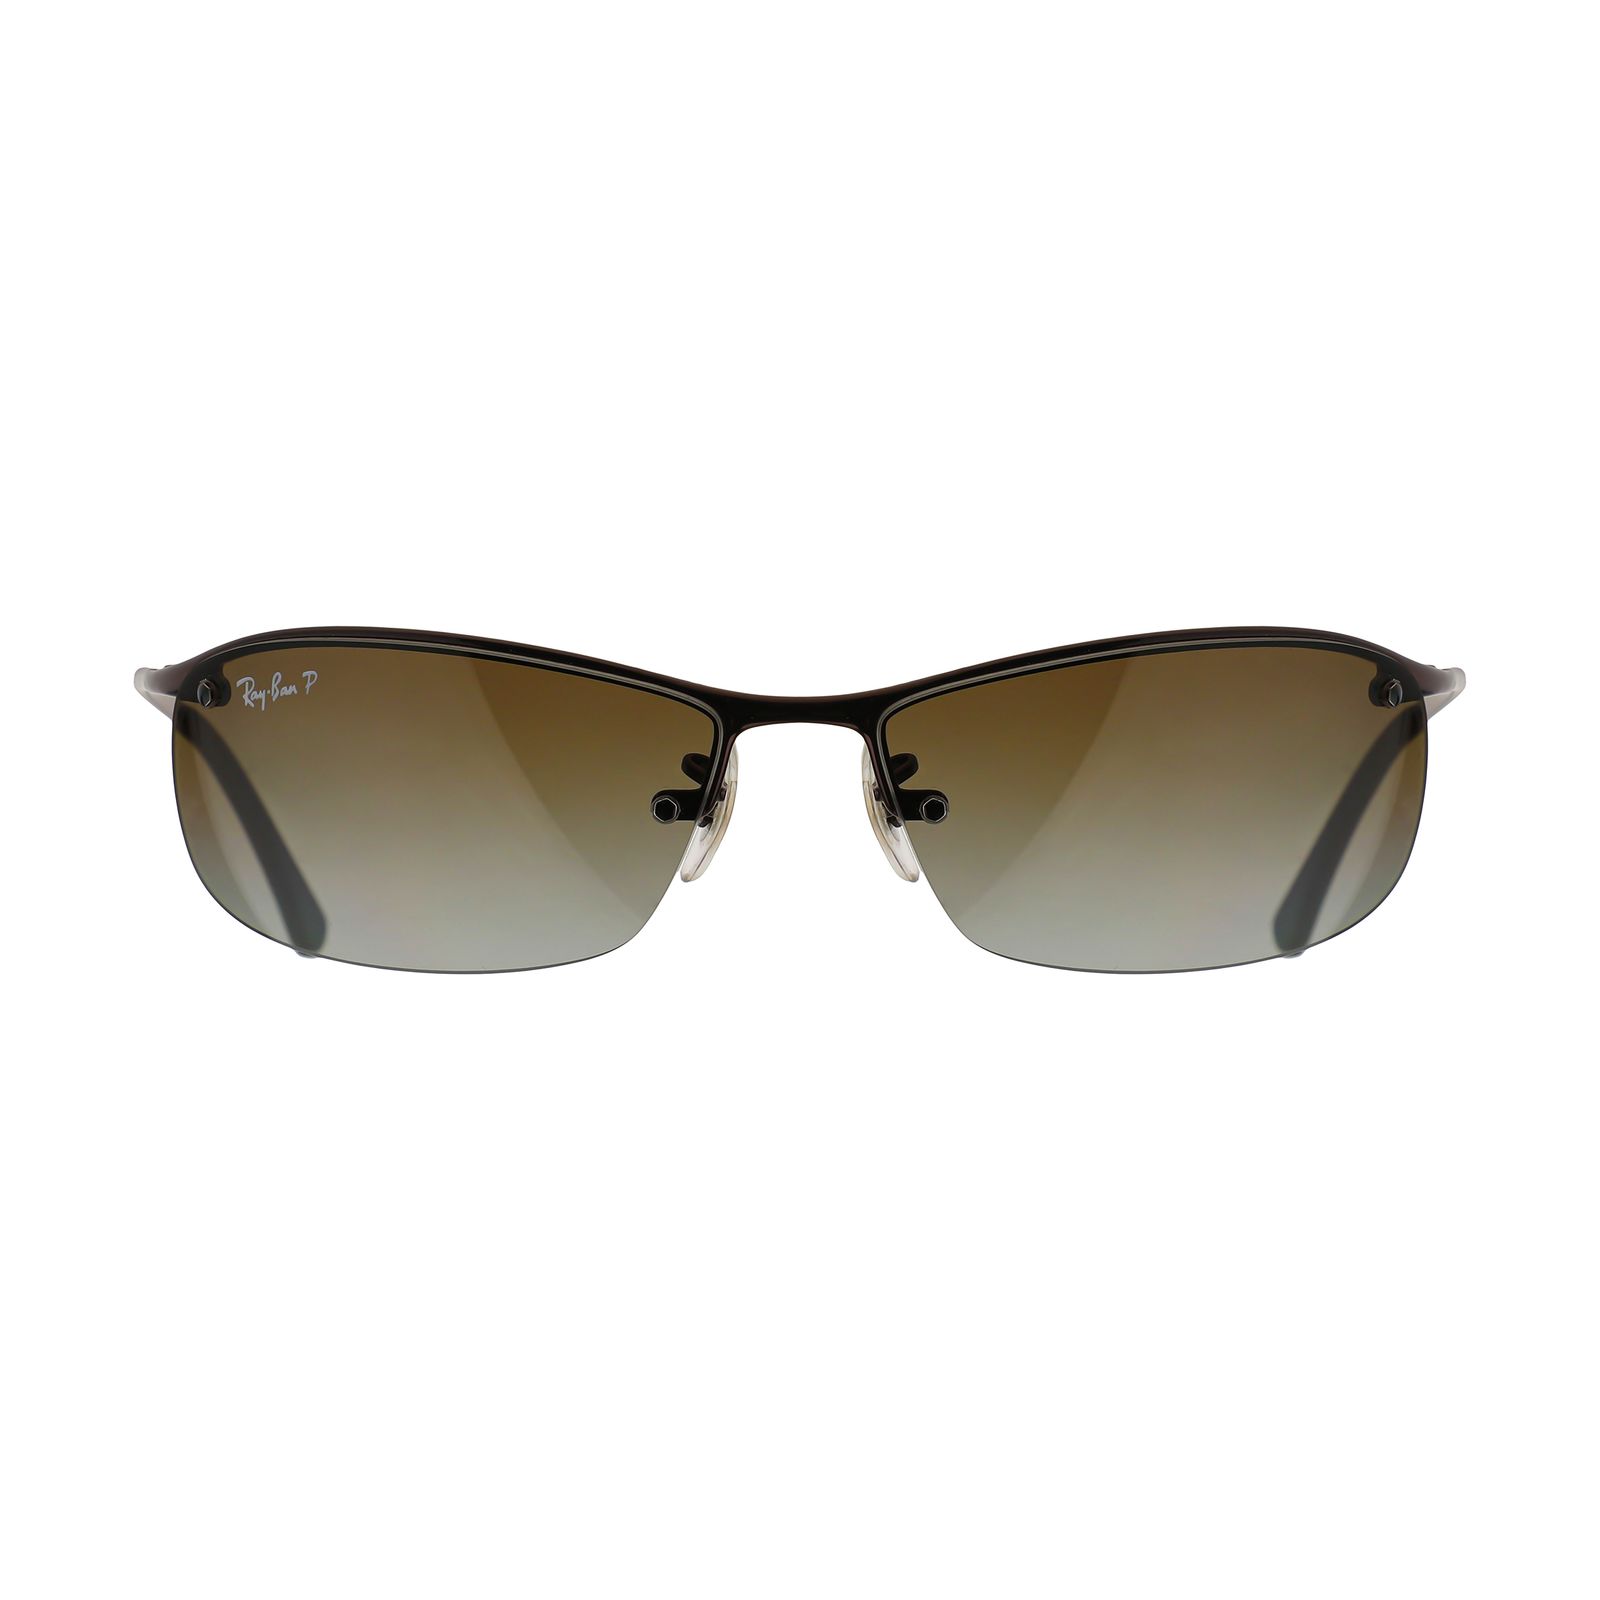 عینک آفتابی ری بن مدل 3183-014/T5-63 -  - 2